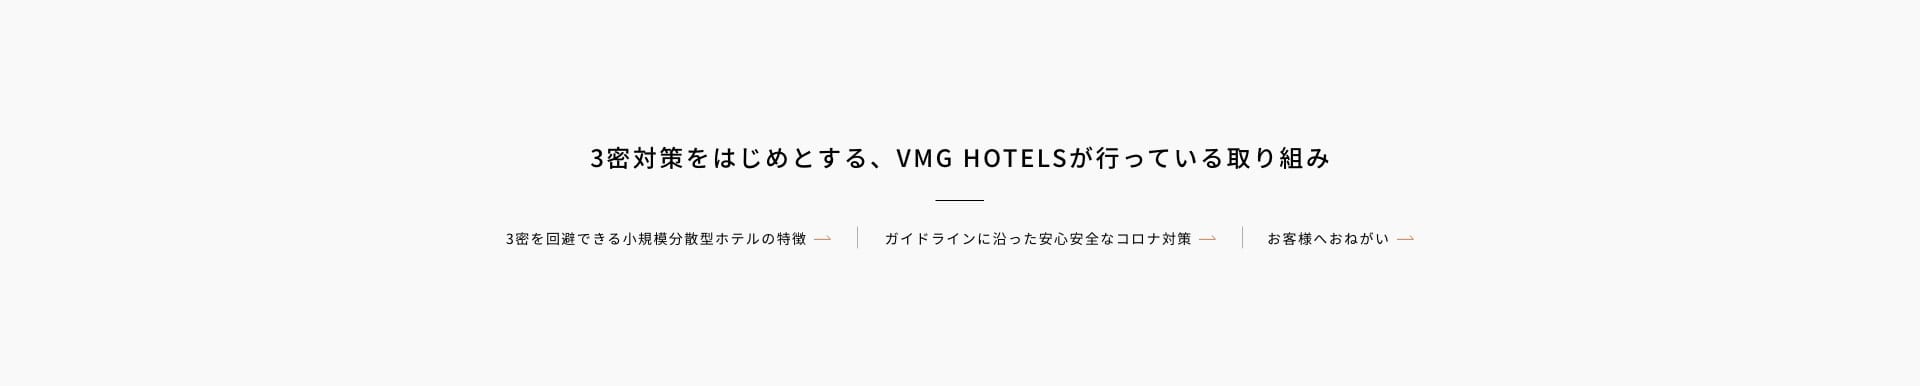 3密対策をはじめとする、VMG HOTELSが行なっている取り組み